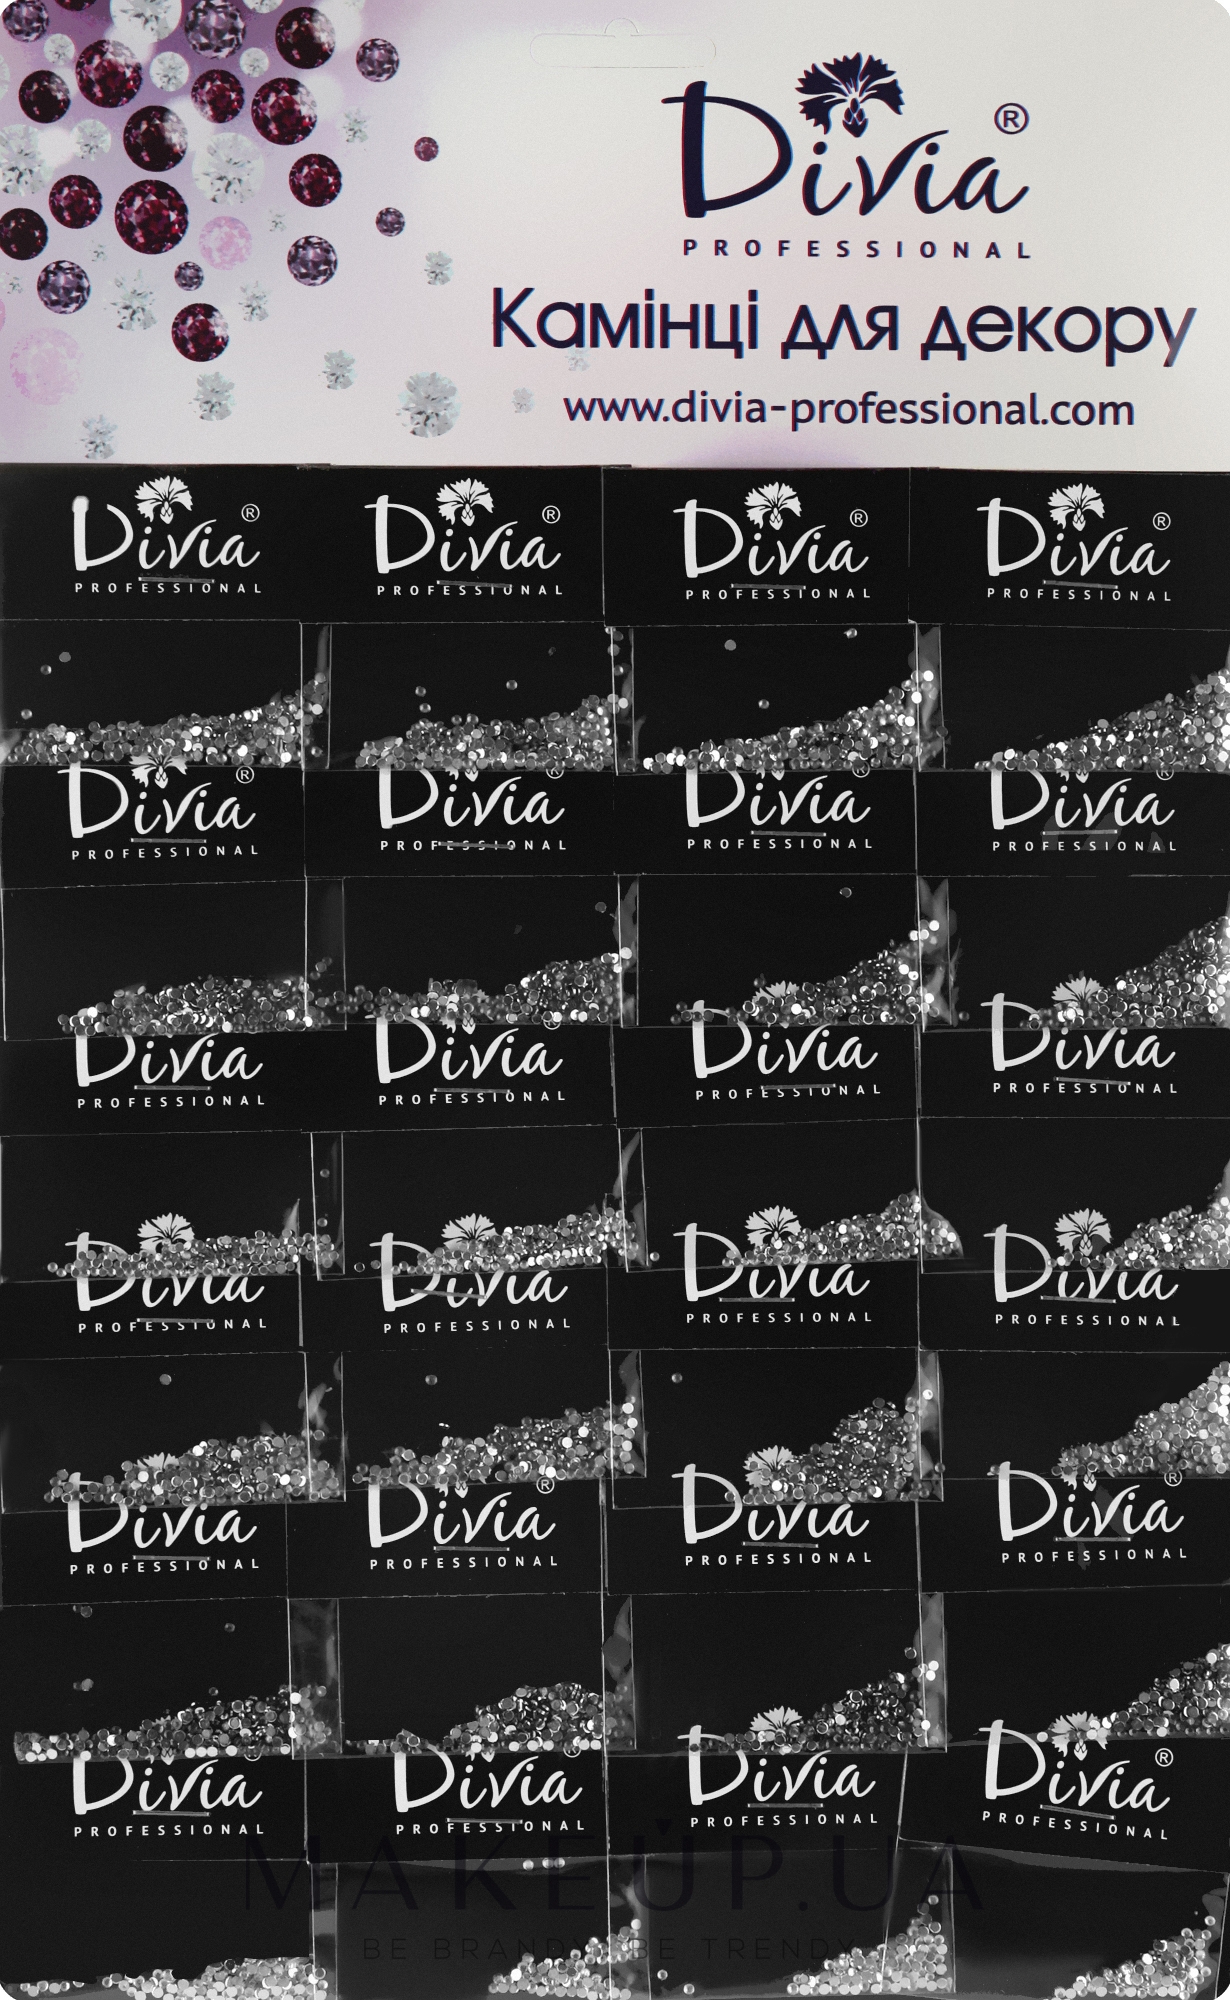 Камінці для декору, сріблясті маленькі, на планшеті, Di851 - Divia Professional — фото 1уп